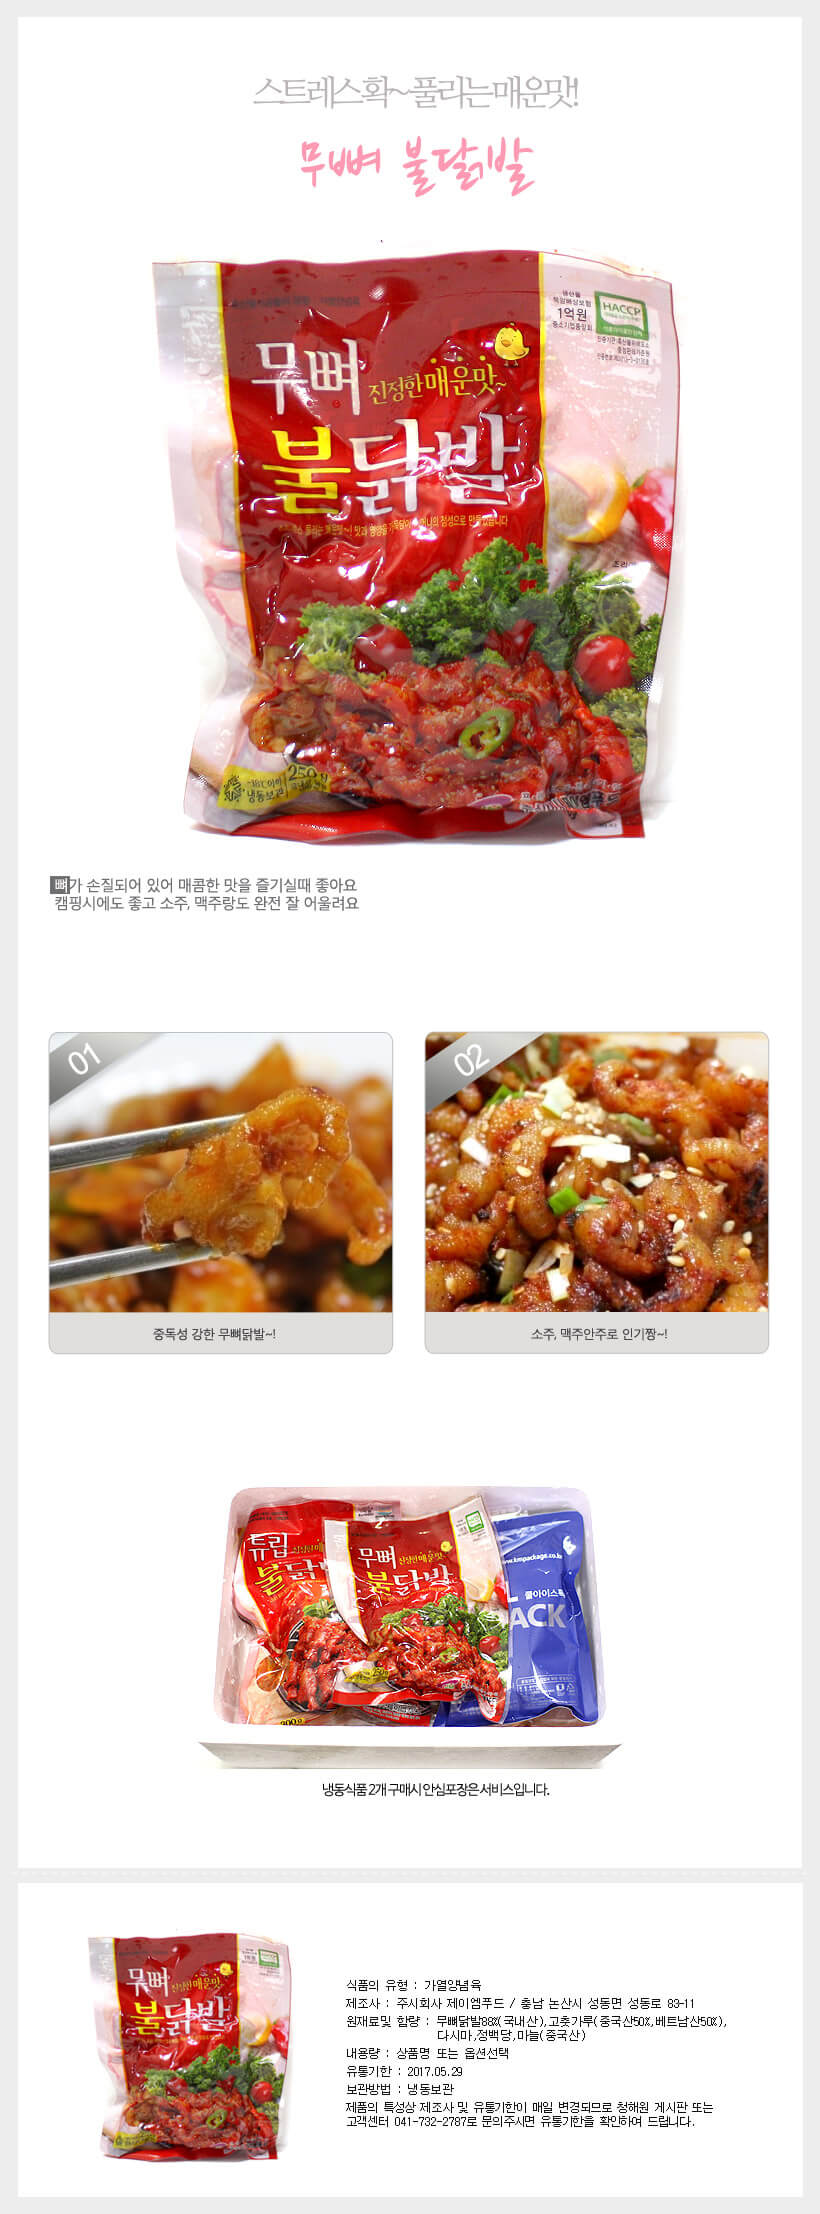 韓國食品-[JM] Boneless Spicy Chicken Feet 230g